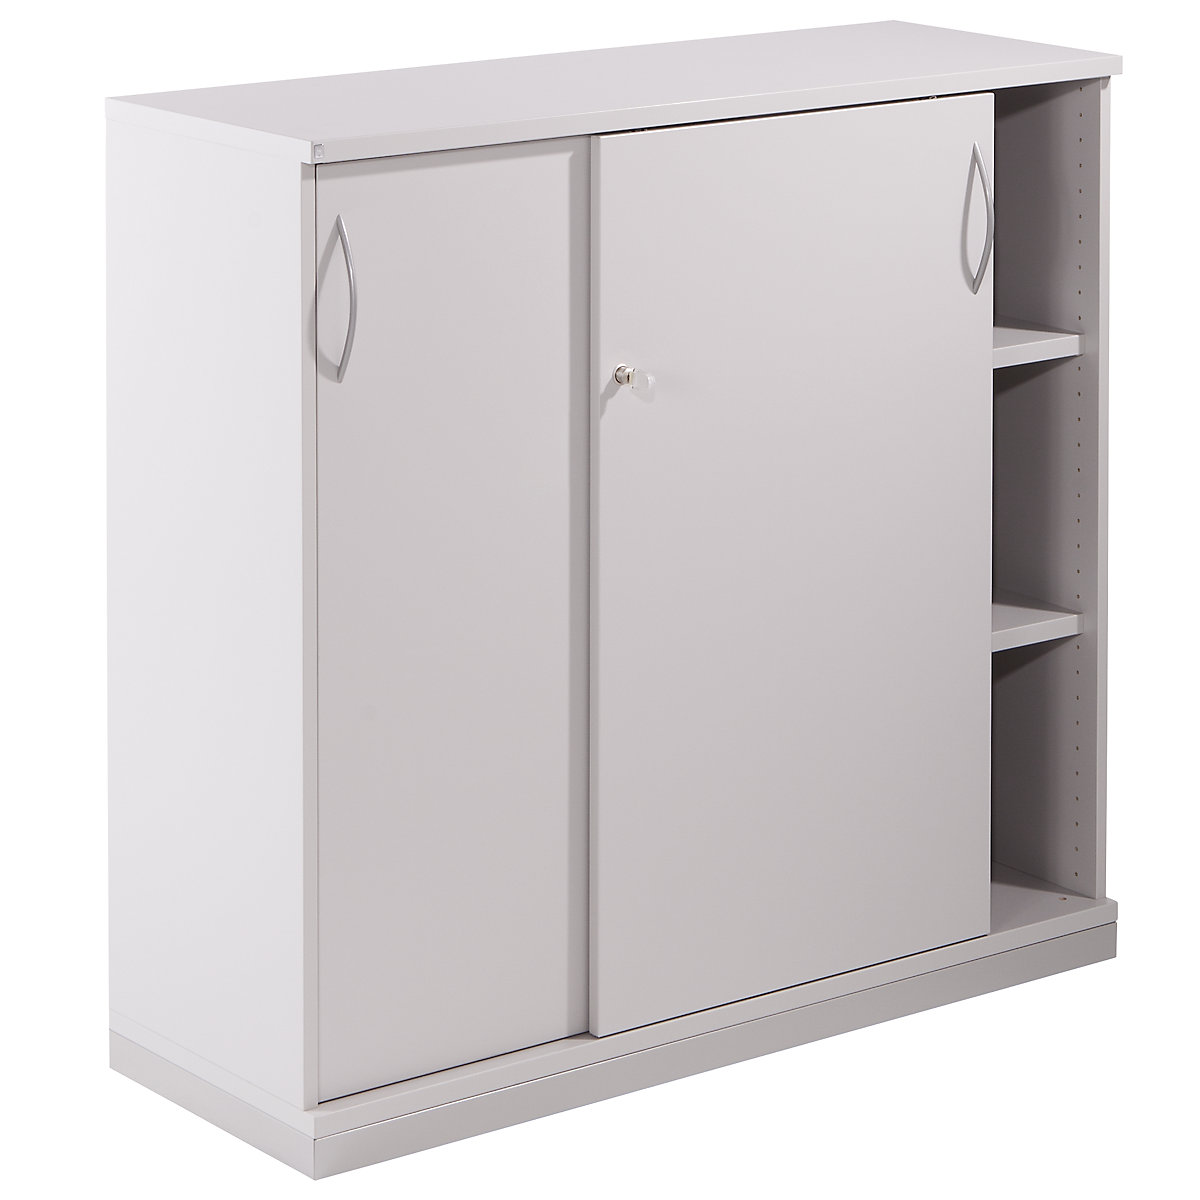 Sliding door cupboard THEA, 2 shelves, 3 file heights, light grey-6